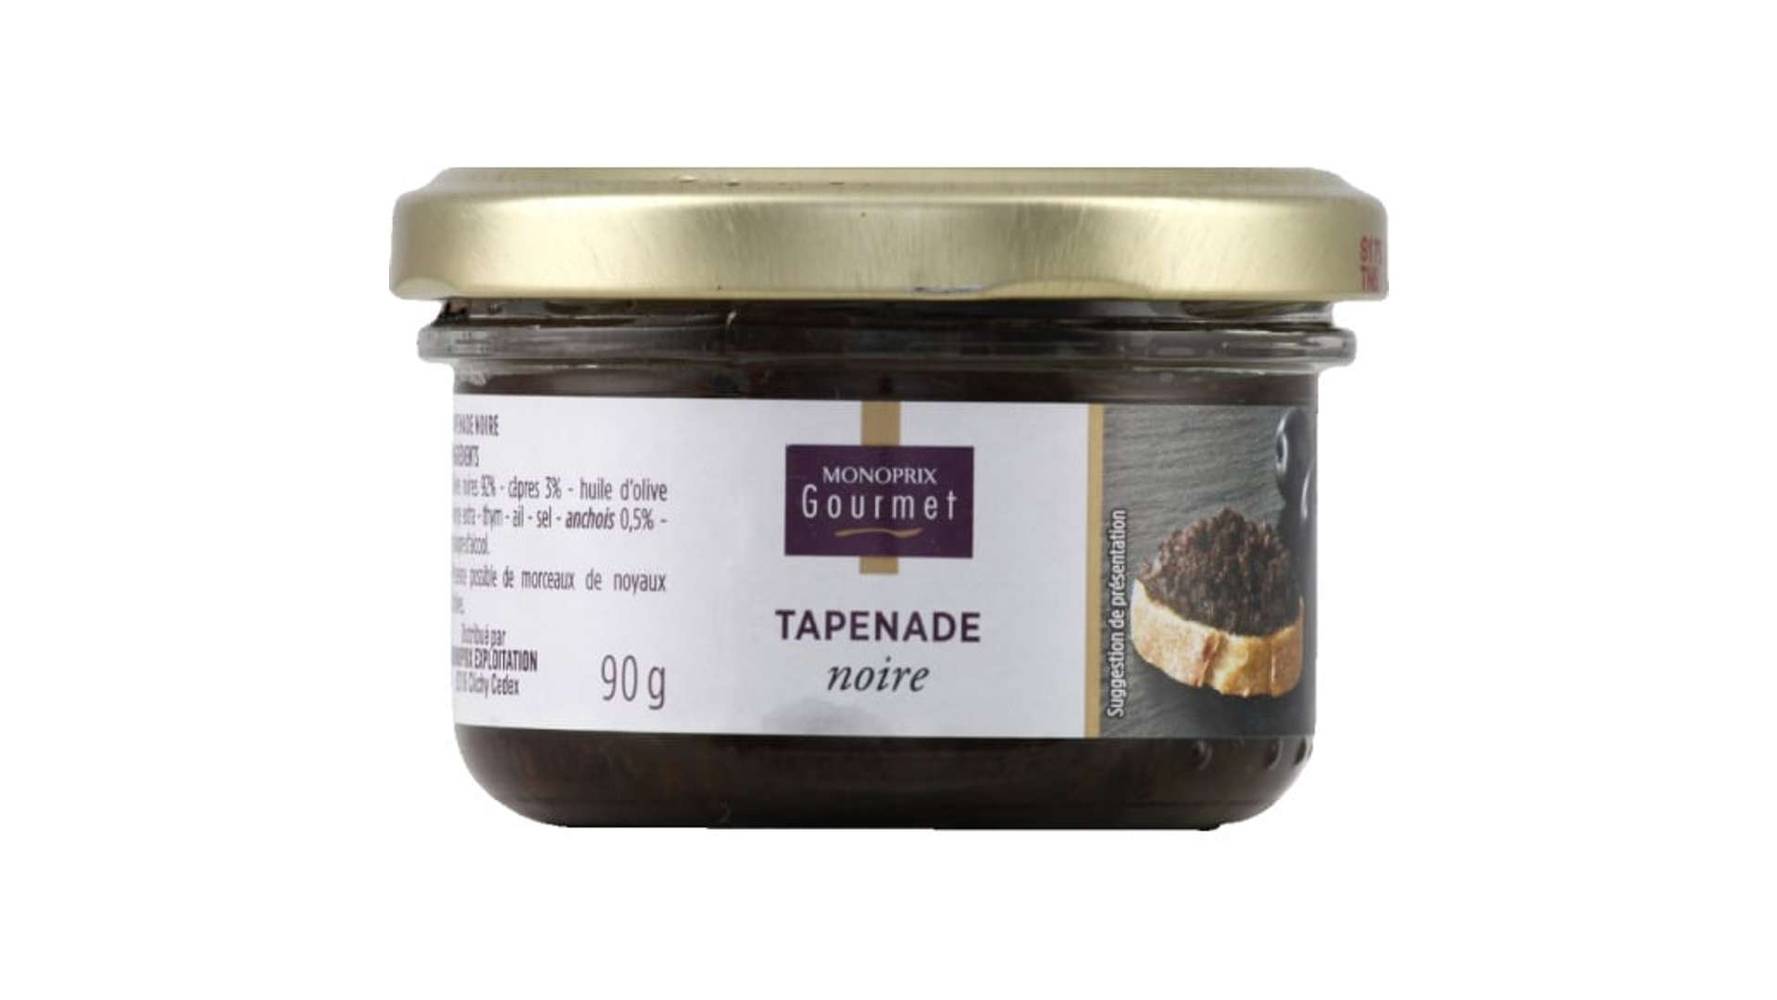 Monoprix Gourmet Tapenade noire Le pot de 90g